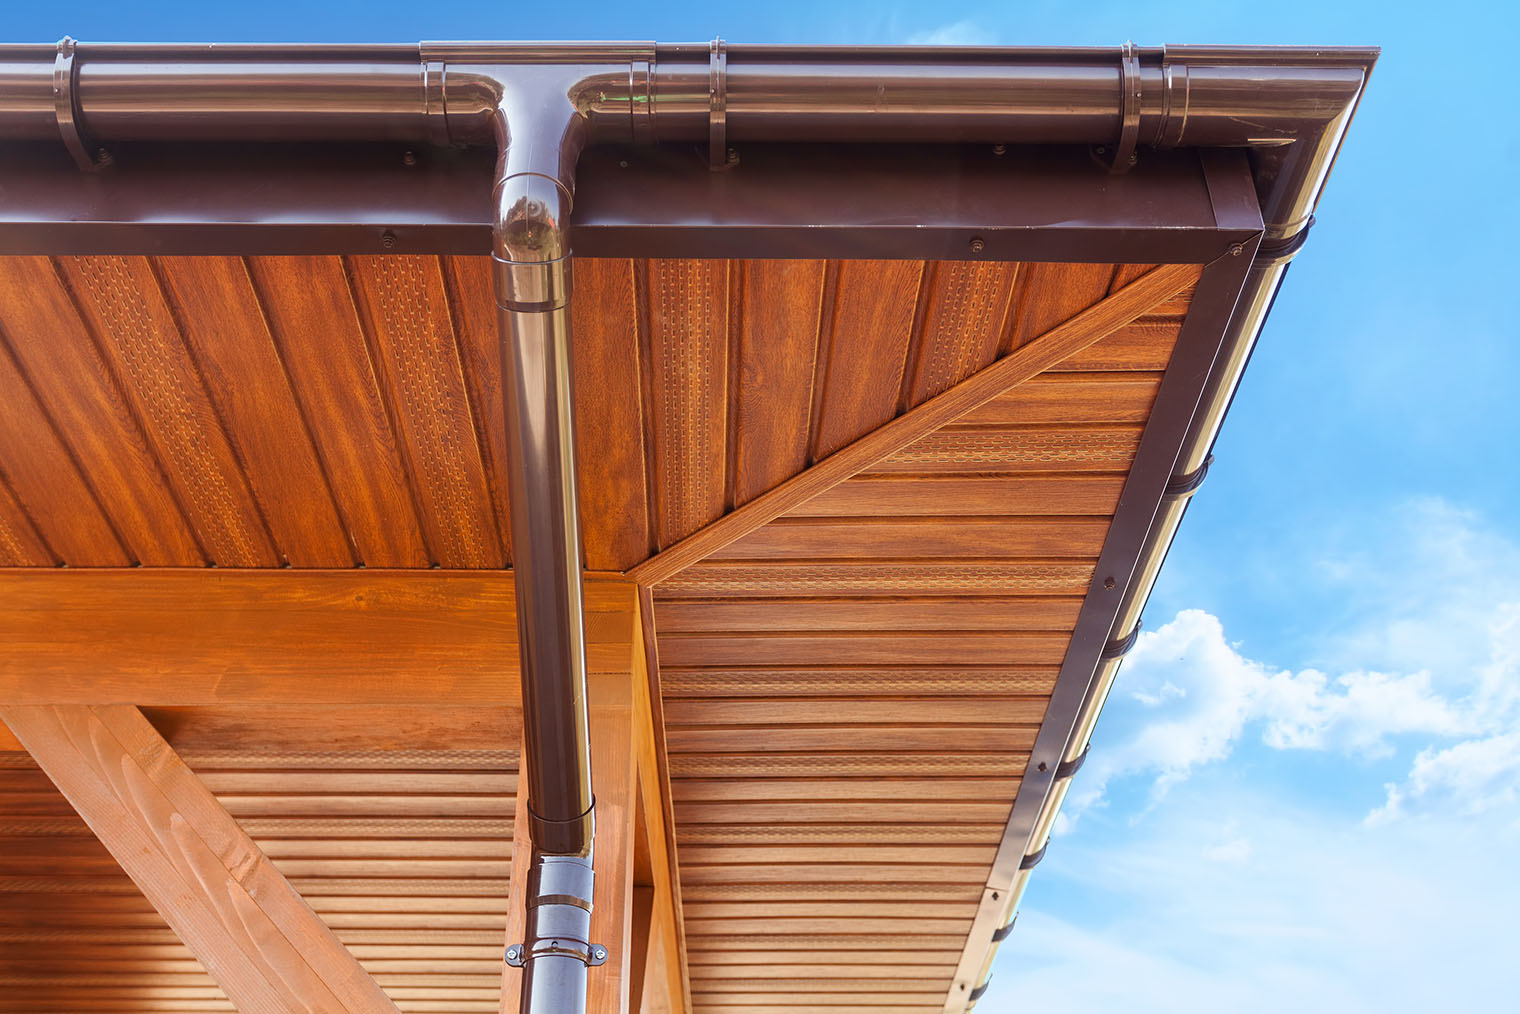 Здесь металлическим сайдингом — софитом — подшиты свесы крыши. Материал издалека не отличить от дерева. Фотография: brizmaker / Shutterstock / FOTODOM